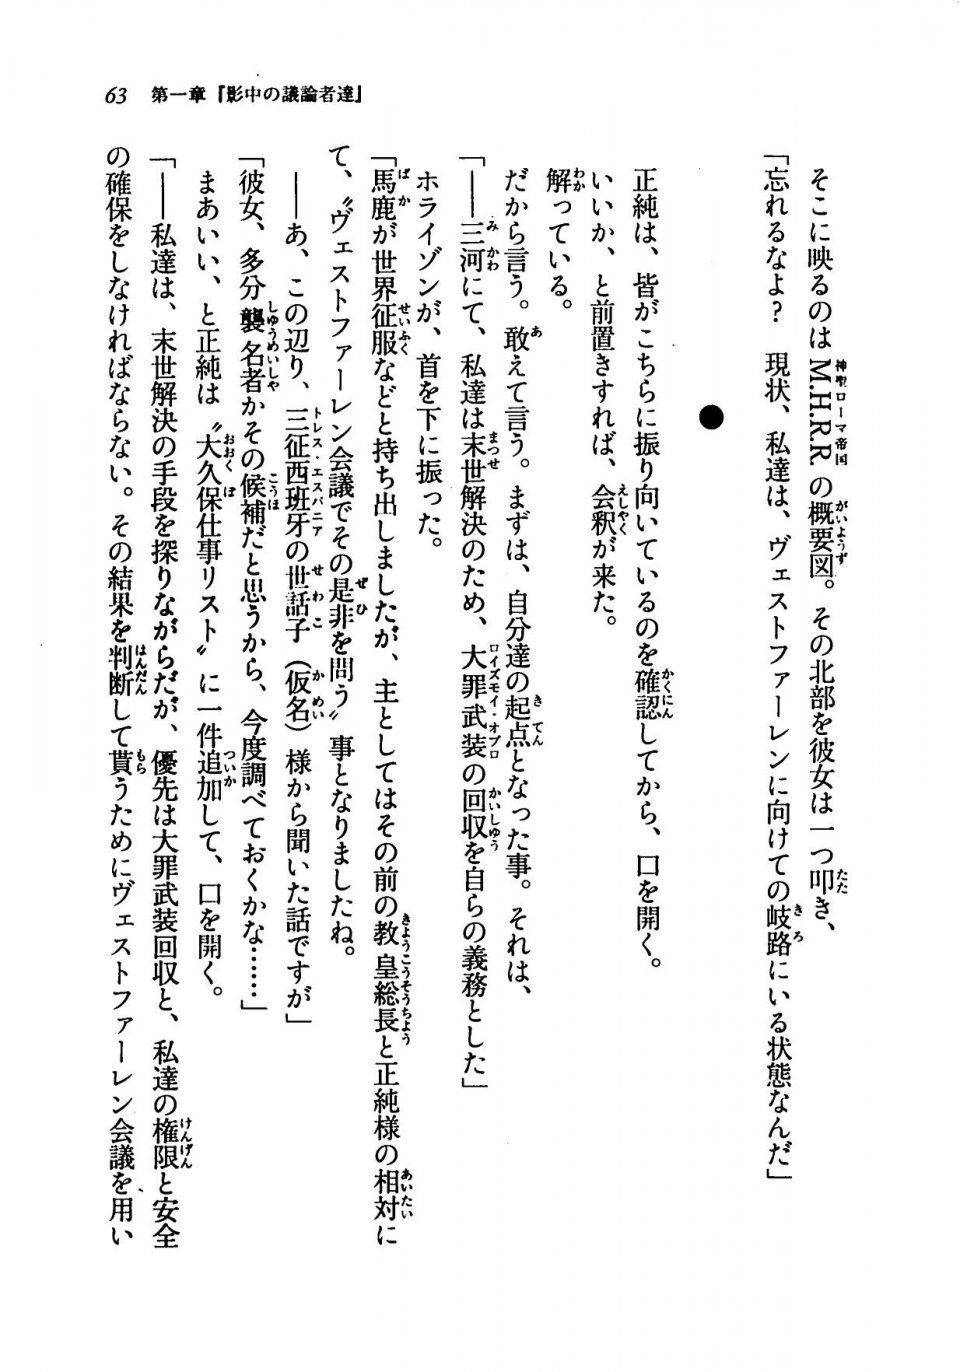 Kyoukai Senjou no Horizon LN Vol 19(8A) - Photo #63